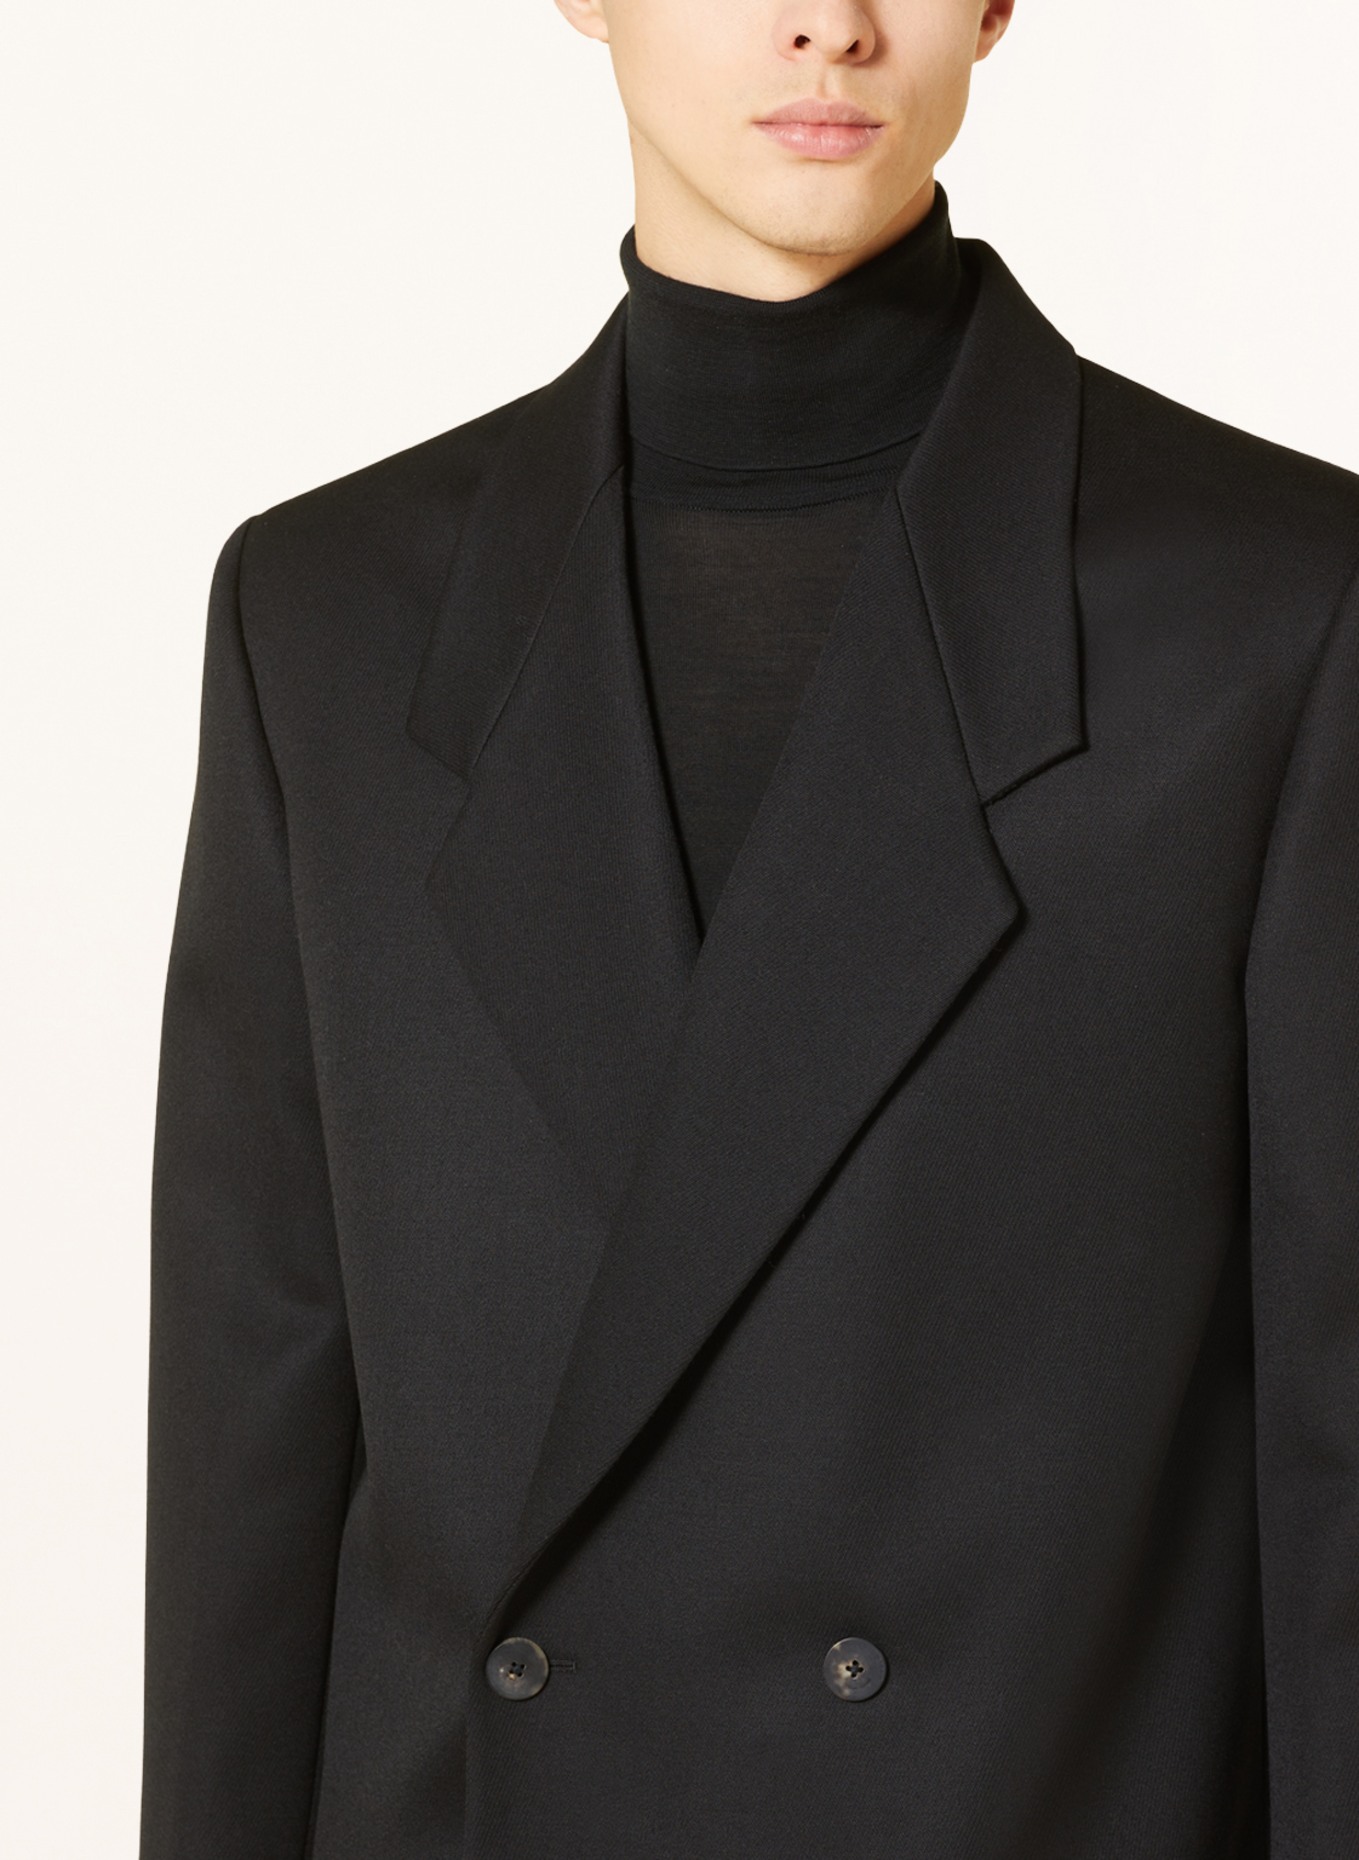 FEAR OF GOD Suit jacket regular fit, Color: BLACK (Image 5)